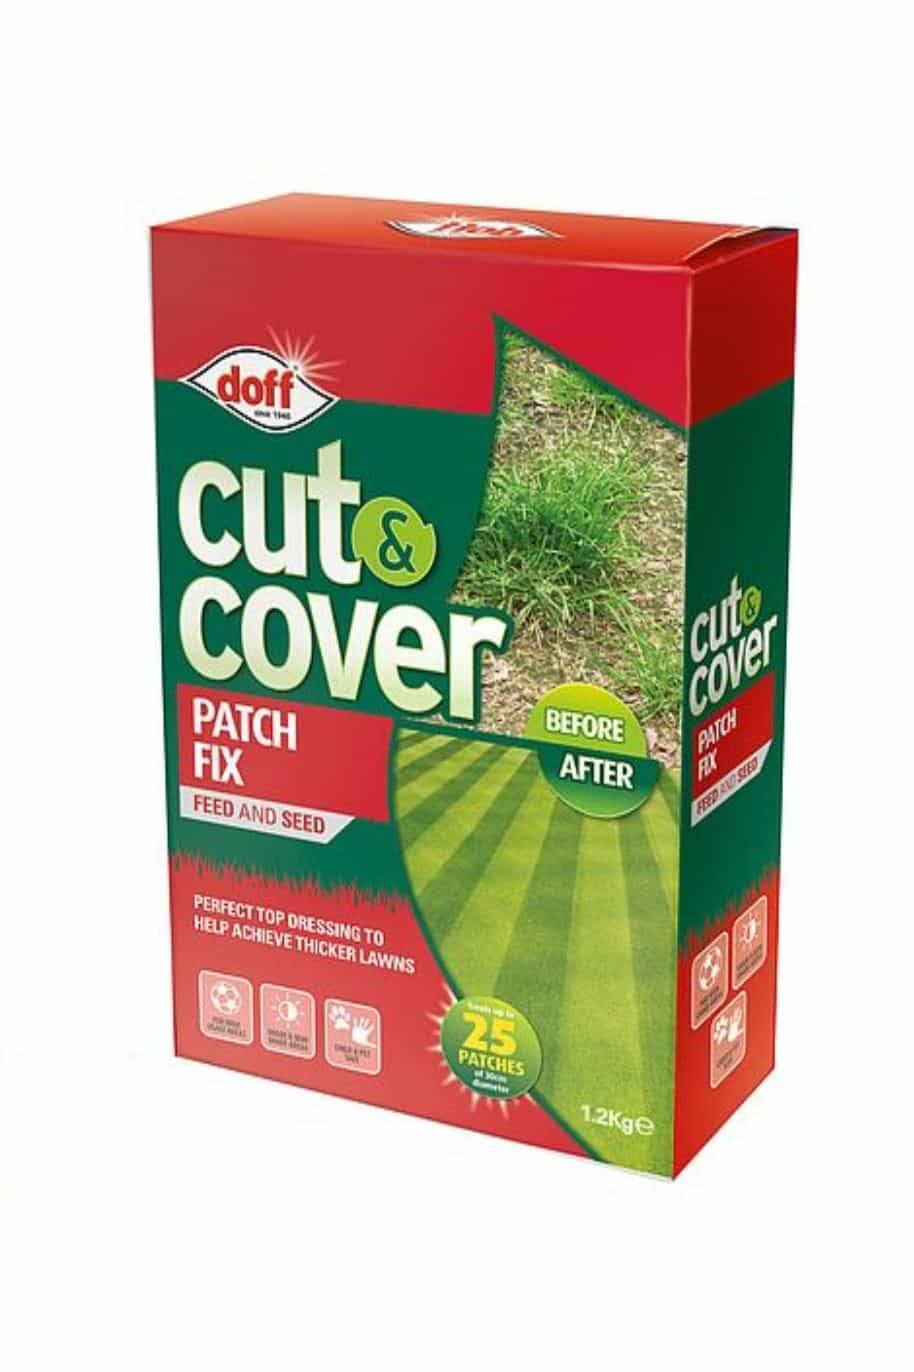 Doff Cut & Cover Patch Fix